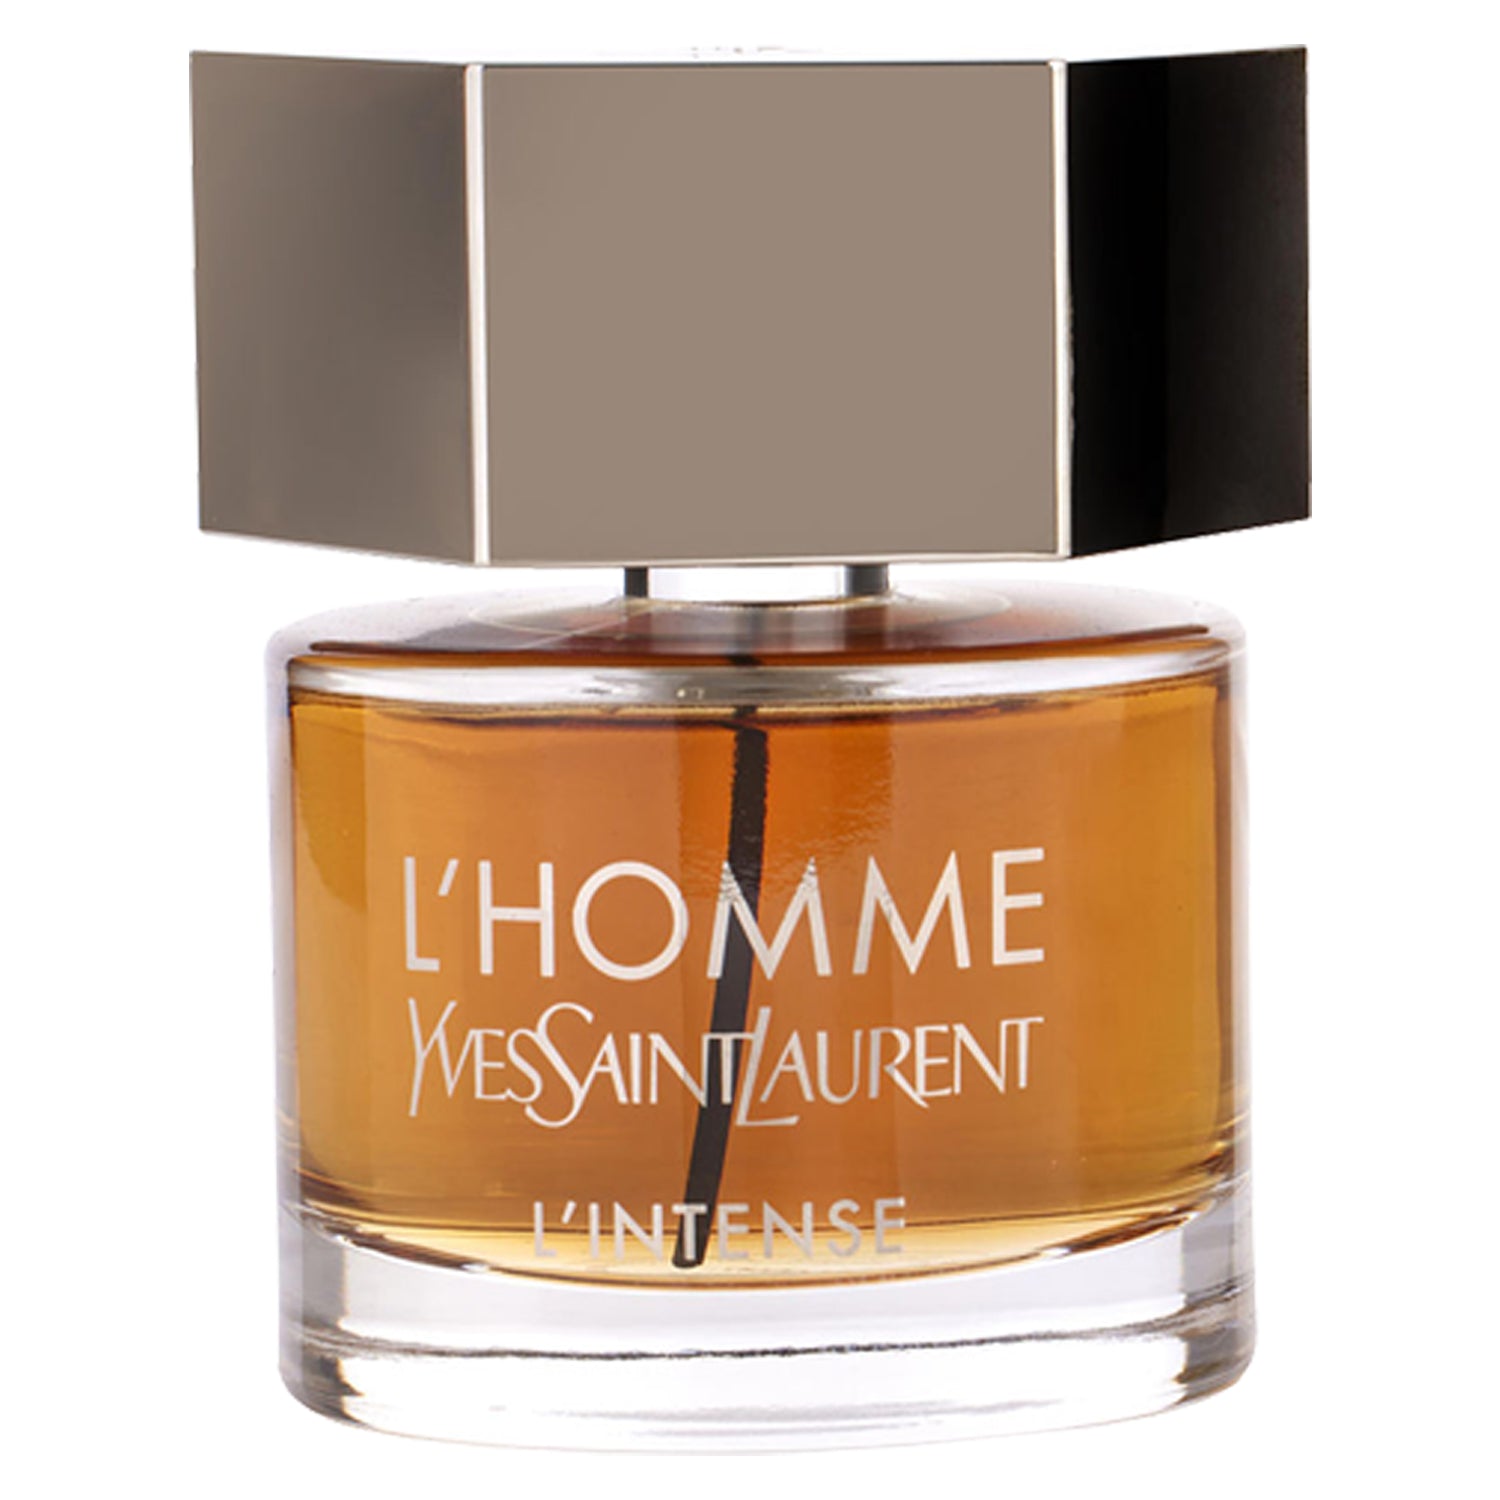 Saint Laurent L'Homme Parfum Intense Eau Parfum for Men DecantX Perfume Cologne Decant Fragrance Samples